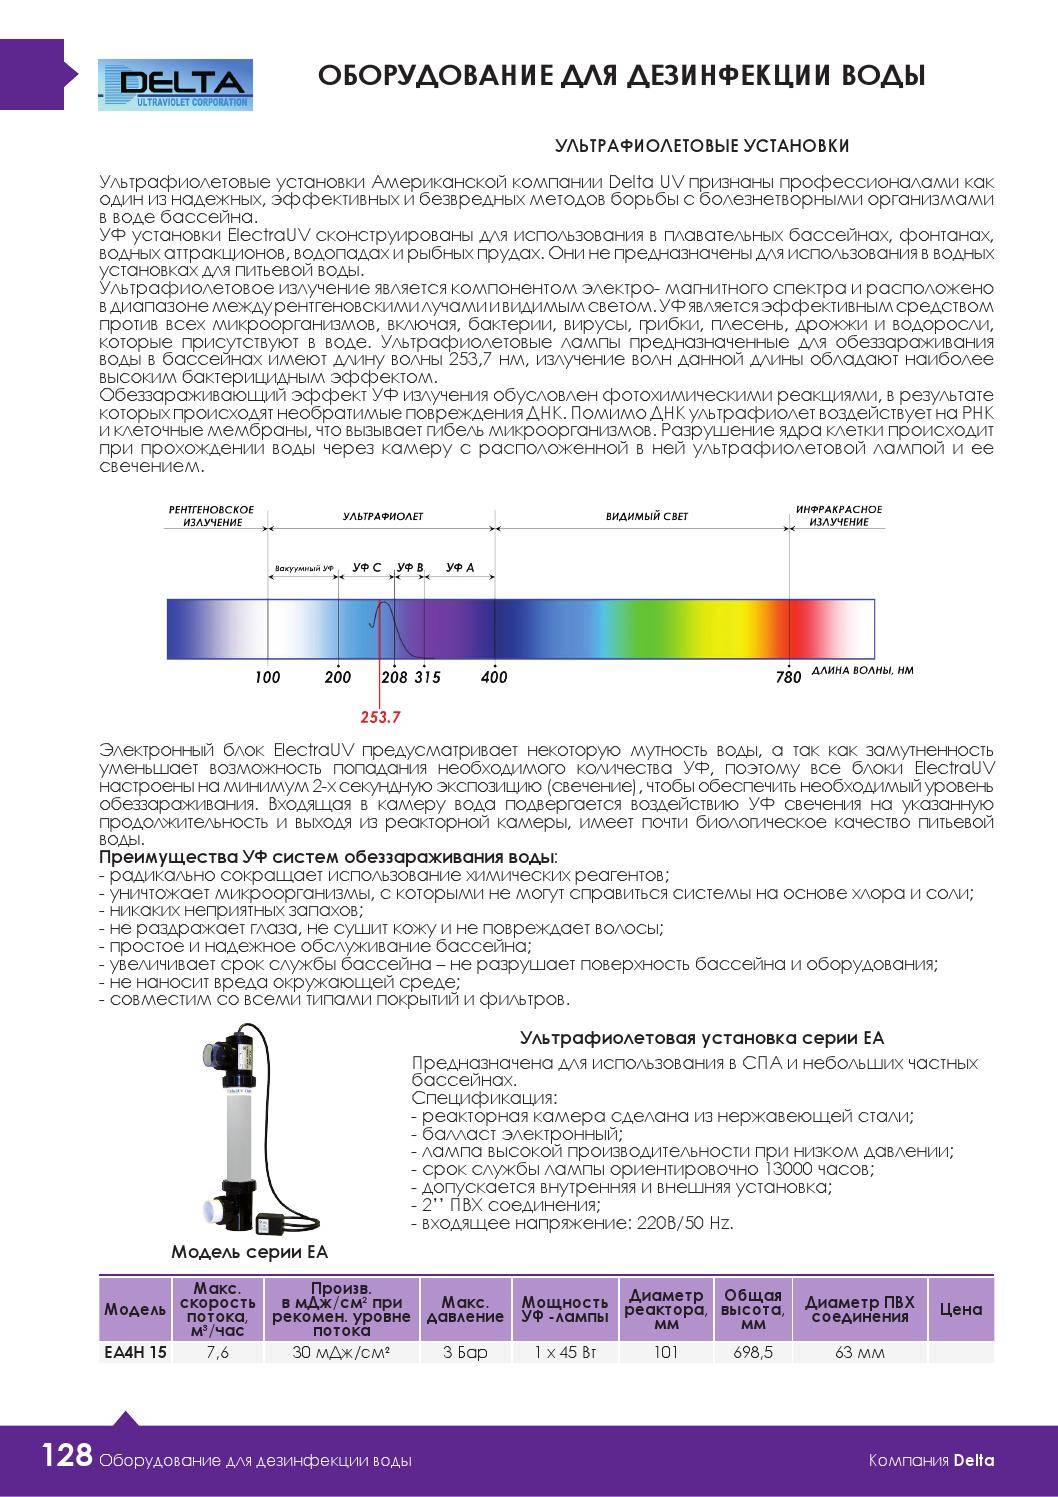 Как проверять ультрафиолетовые лампы на работоспособность - 1posvetu.ru